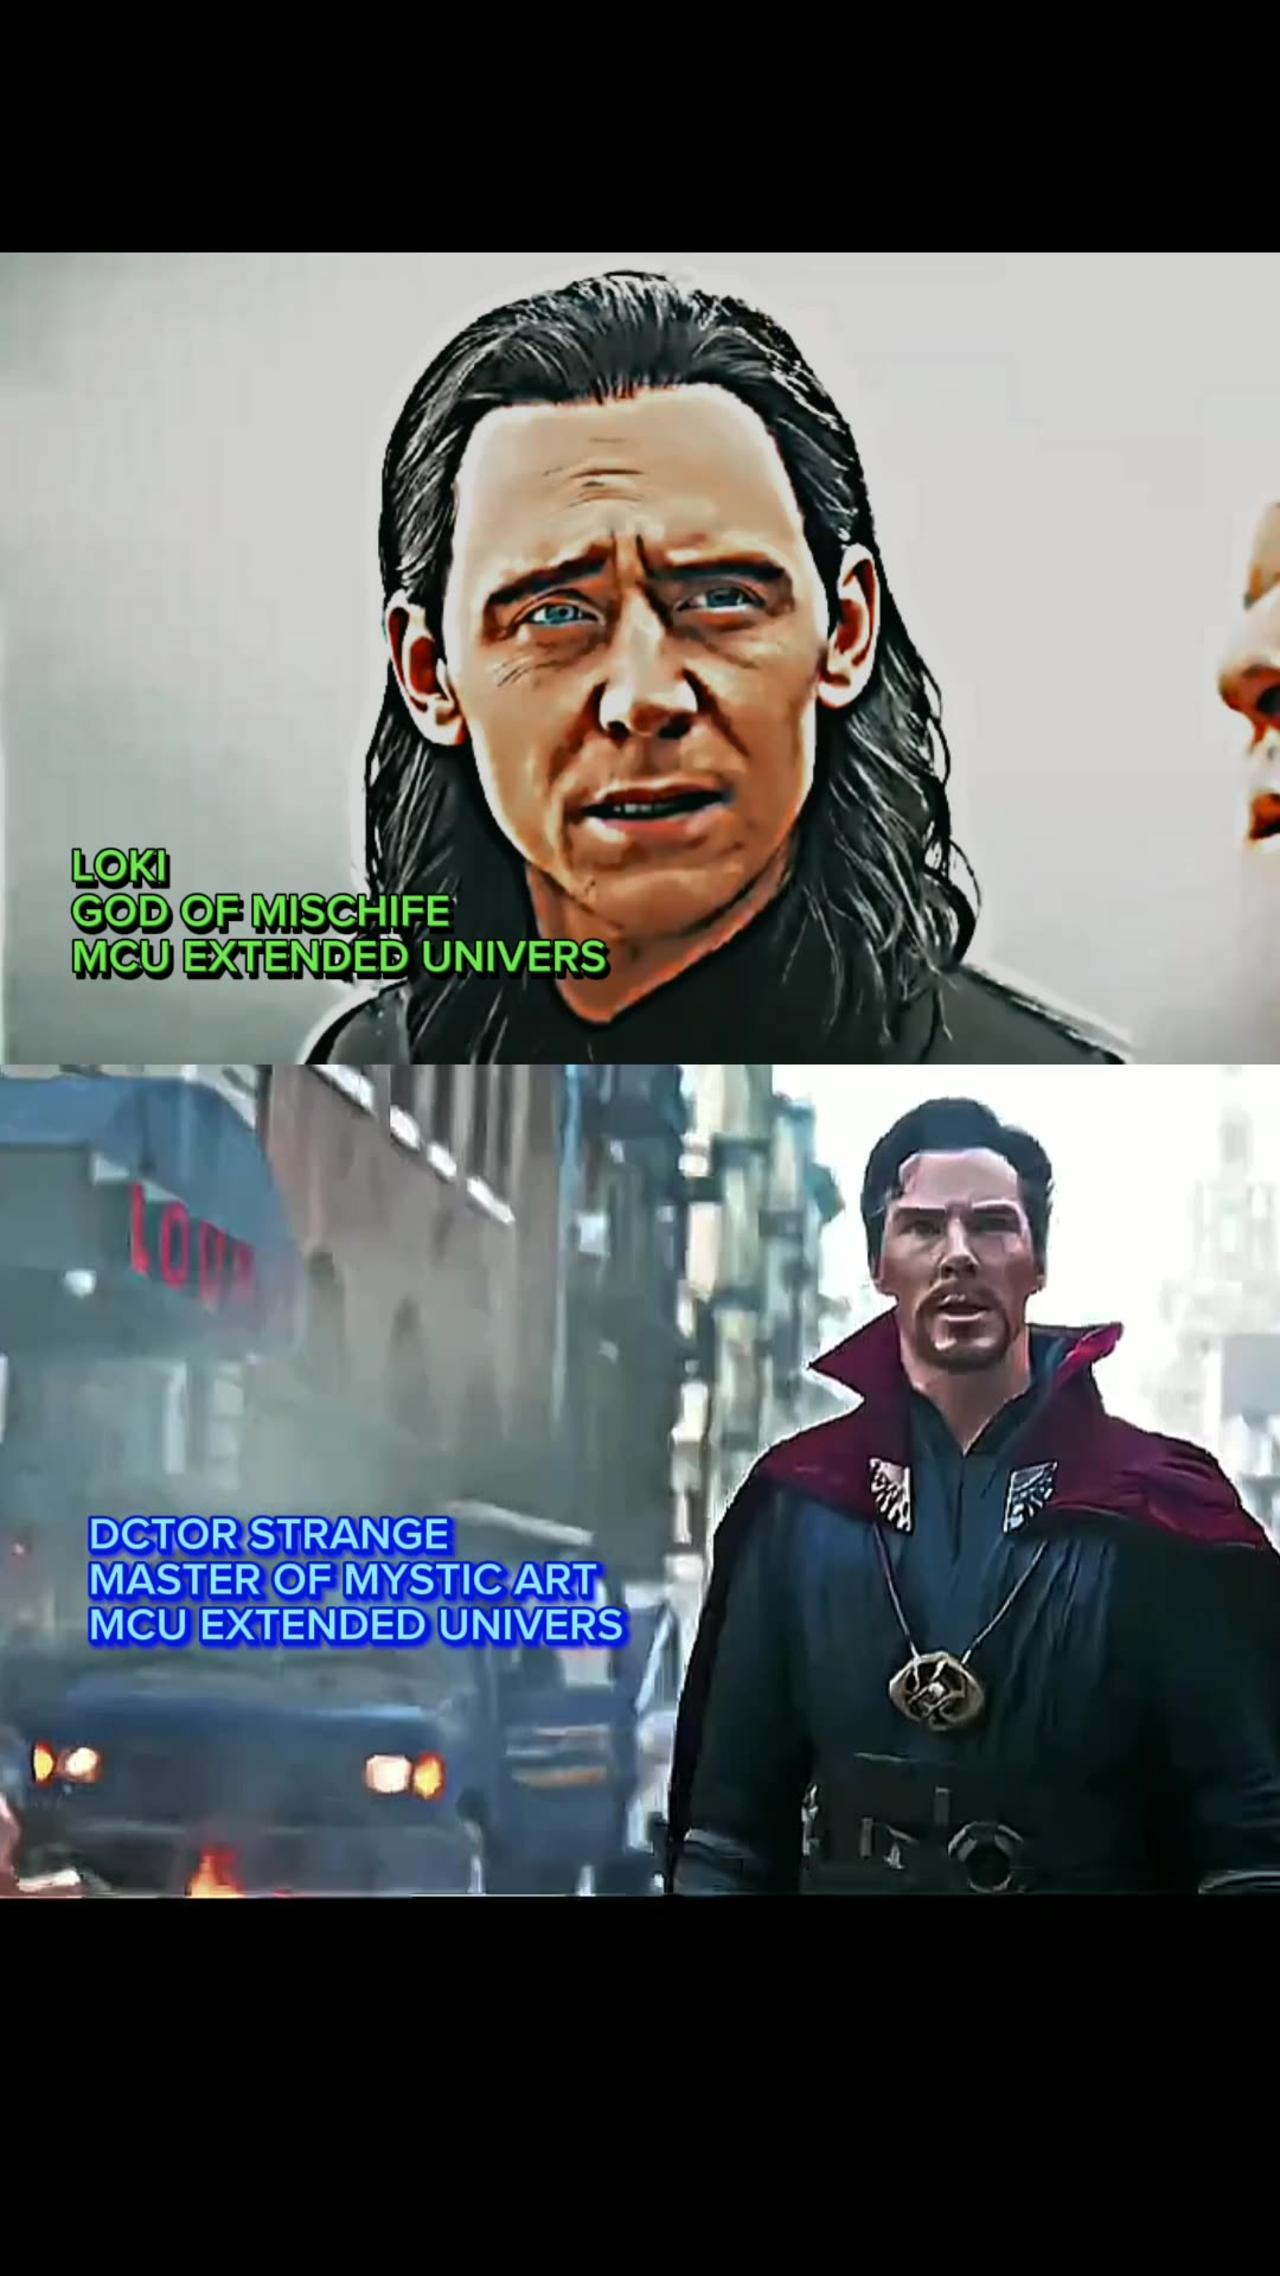 Doctor strange Vs LOKI (before Loki series)